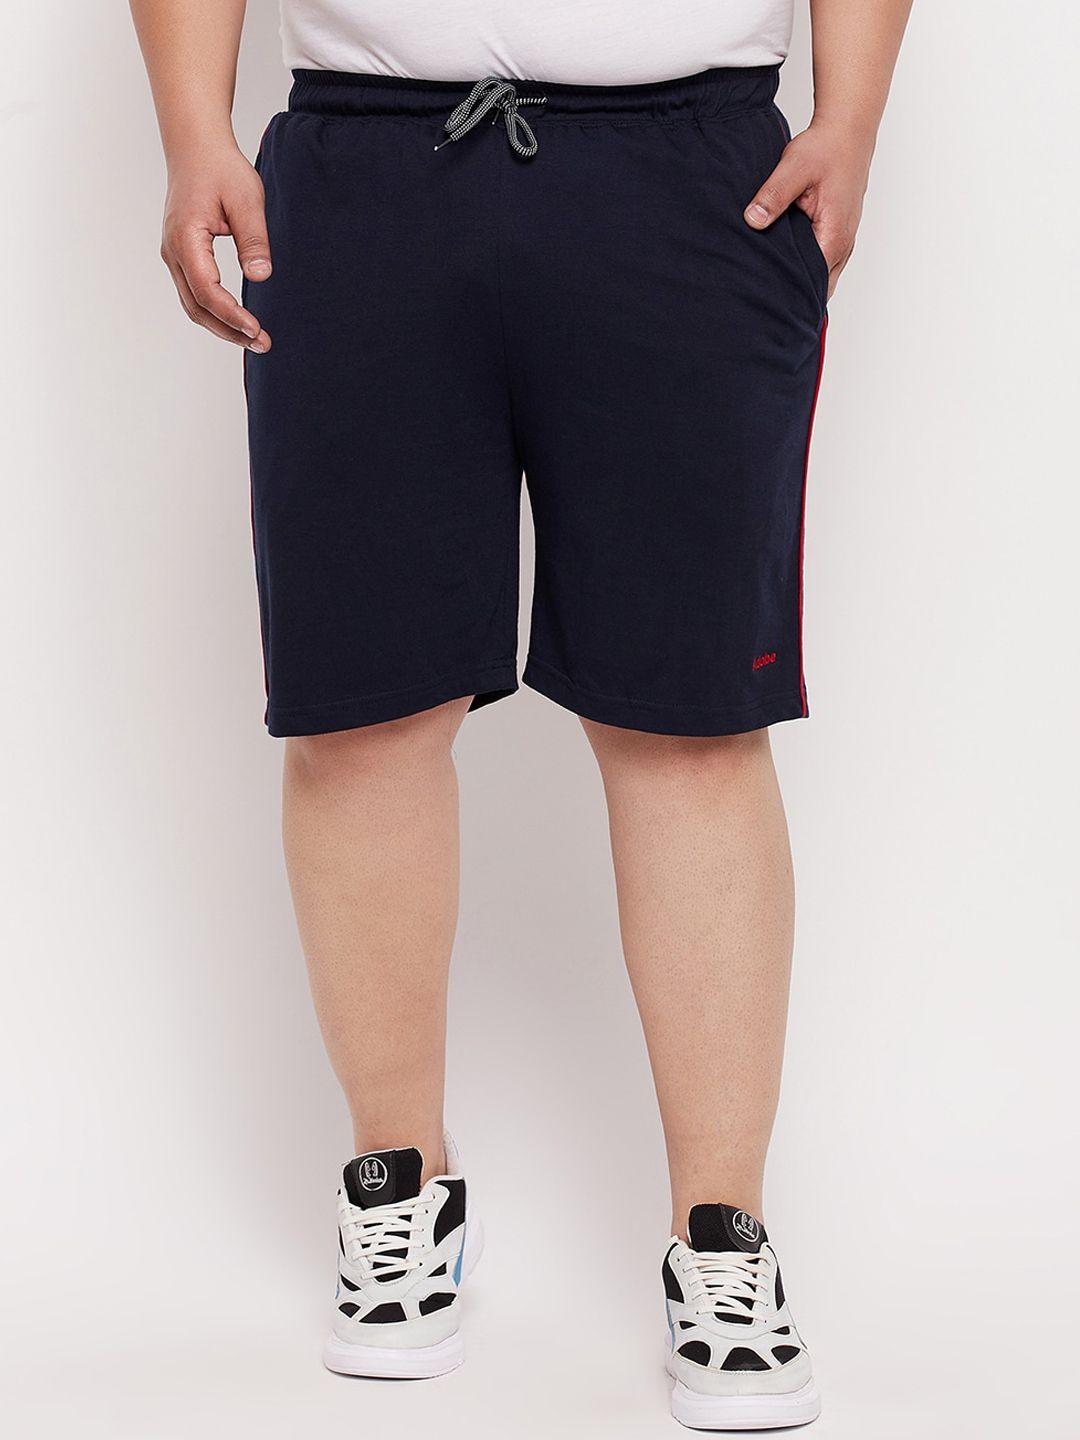 adobe men navy blue shorts